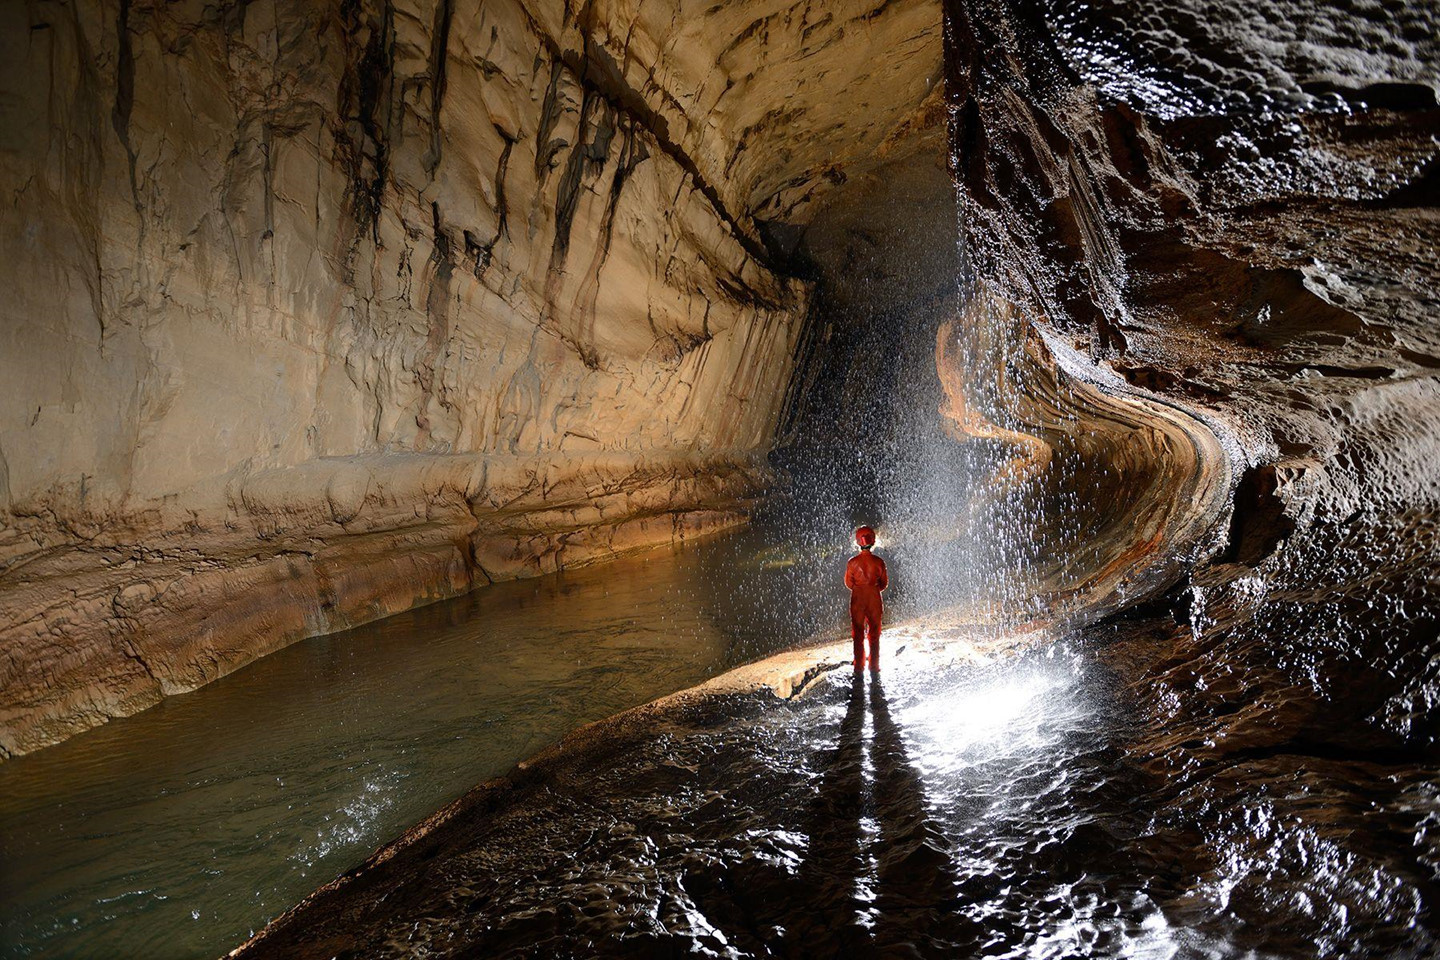  Gua Air Jernih (Malaysia) - 215,3 km: Hệ thống hang động Gua Air Jernih, hay Clearwater ở Sarawak, Malaysia, sở hữu dòng sông ngầm và kết cấu đá tuyệt đẹp. Địa điểm này thuộc vườn quốc gia Gunung Mulu, di sản thiên nhiên thế giới được UNESCO công nhận năm 2000. Người ta xem Gua Air Jernih như một trong những ví dụ điển hình về hang động có sông ngầm nhiệt đới. Ảnh: Philippe Crochet.